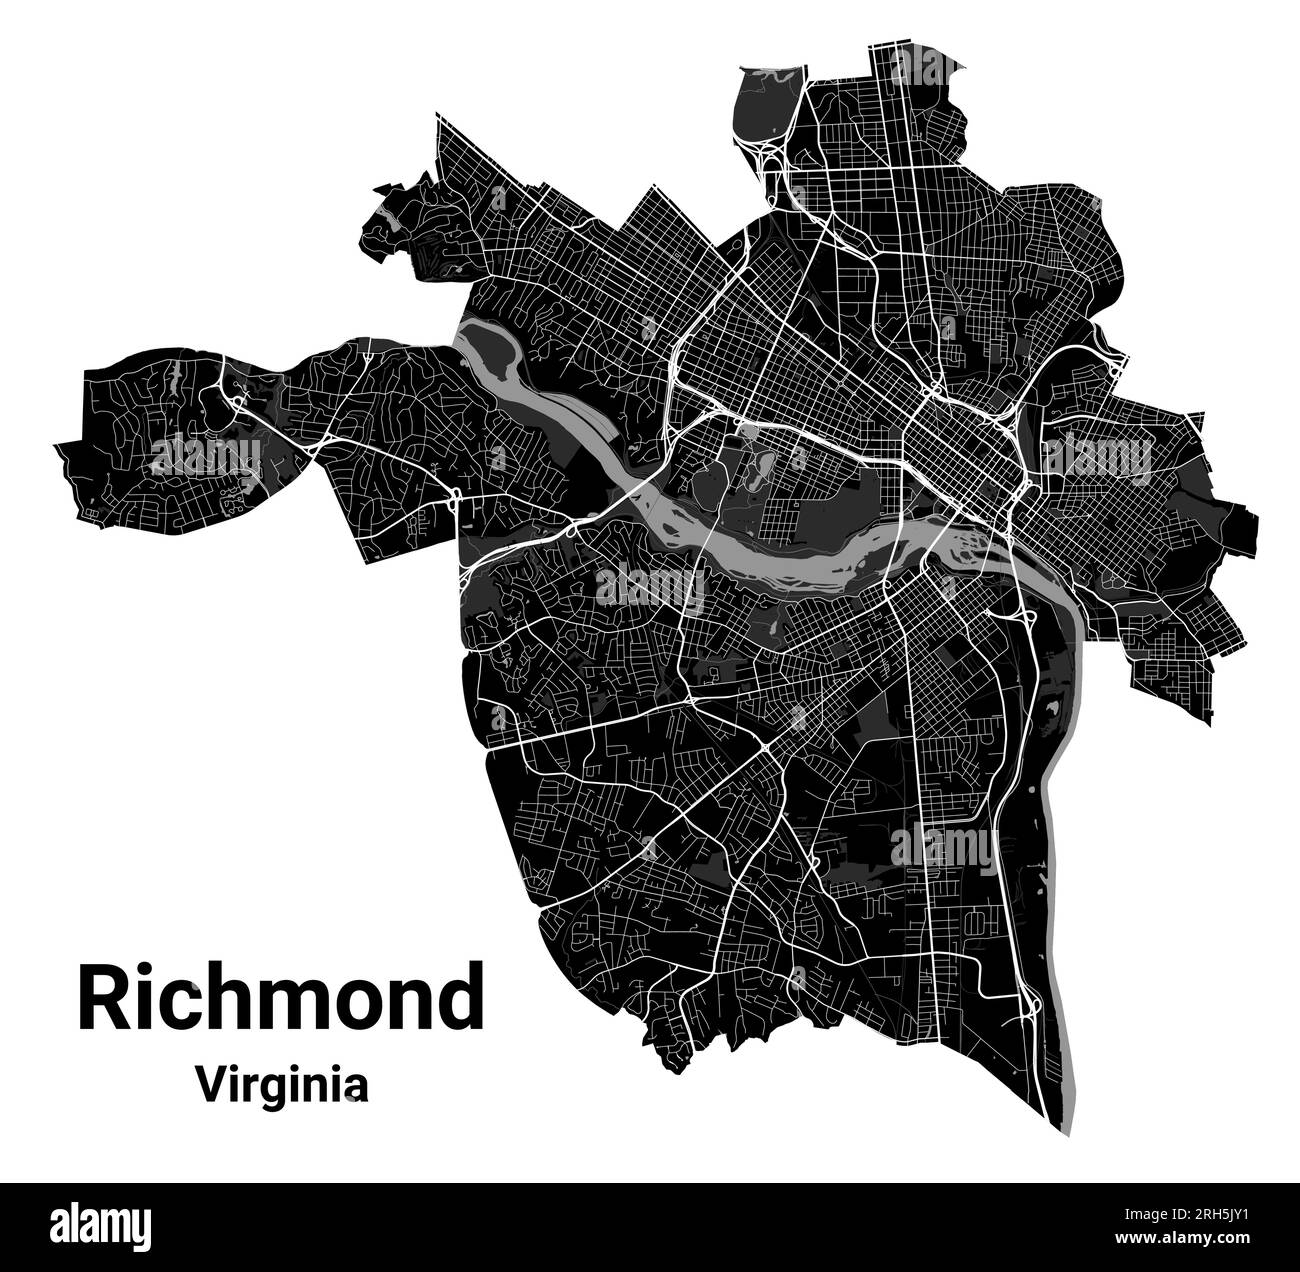 Mappa della città di Richmond, capitale dello stato americano della Virginia. Confini amministrativi comunali, mappa dell'area in bianco e nero con fiumi e strade, parchi e Illustrazione Vettoriale